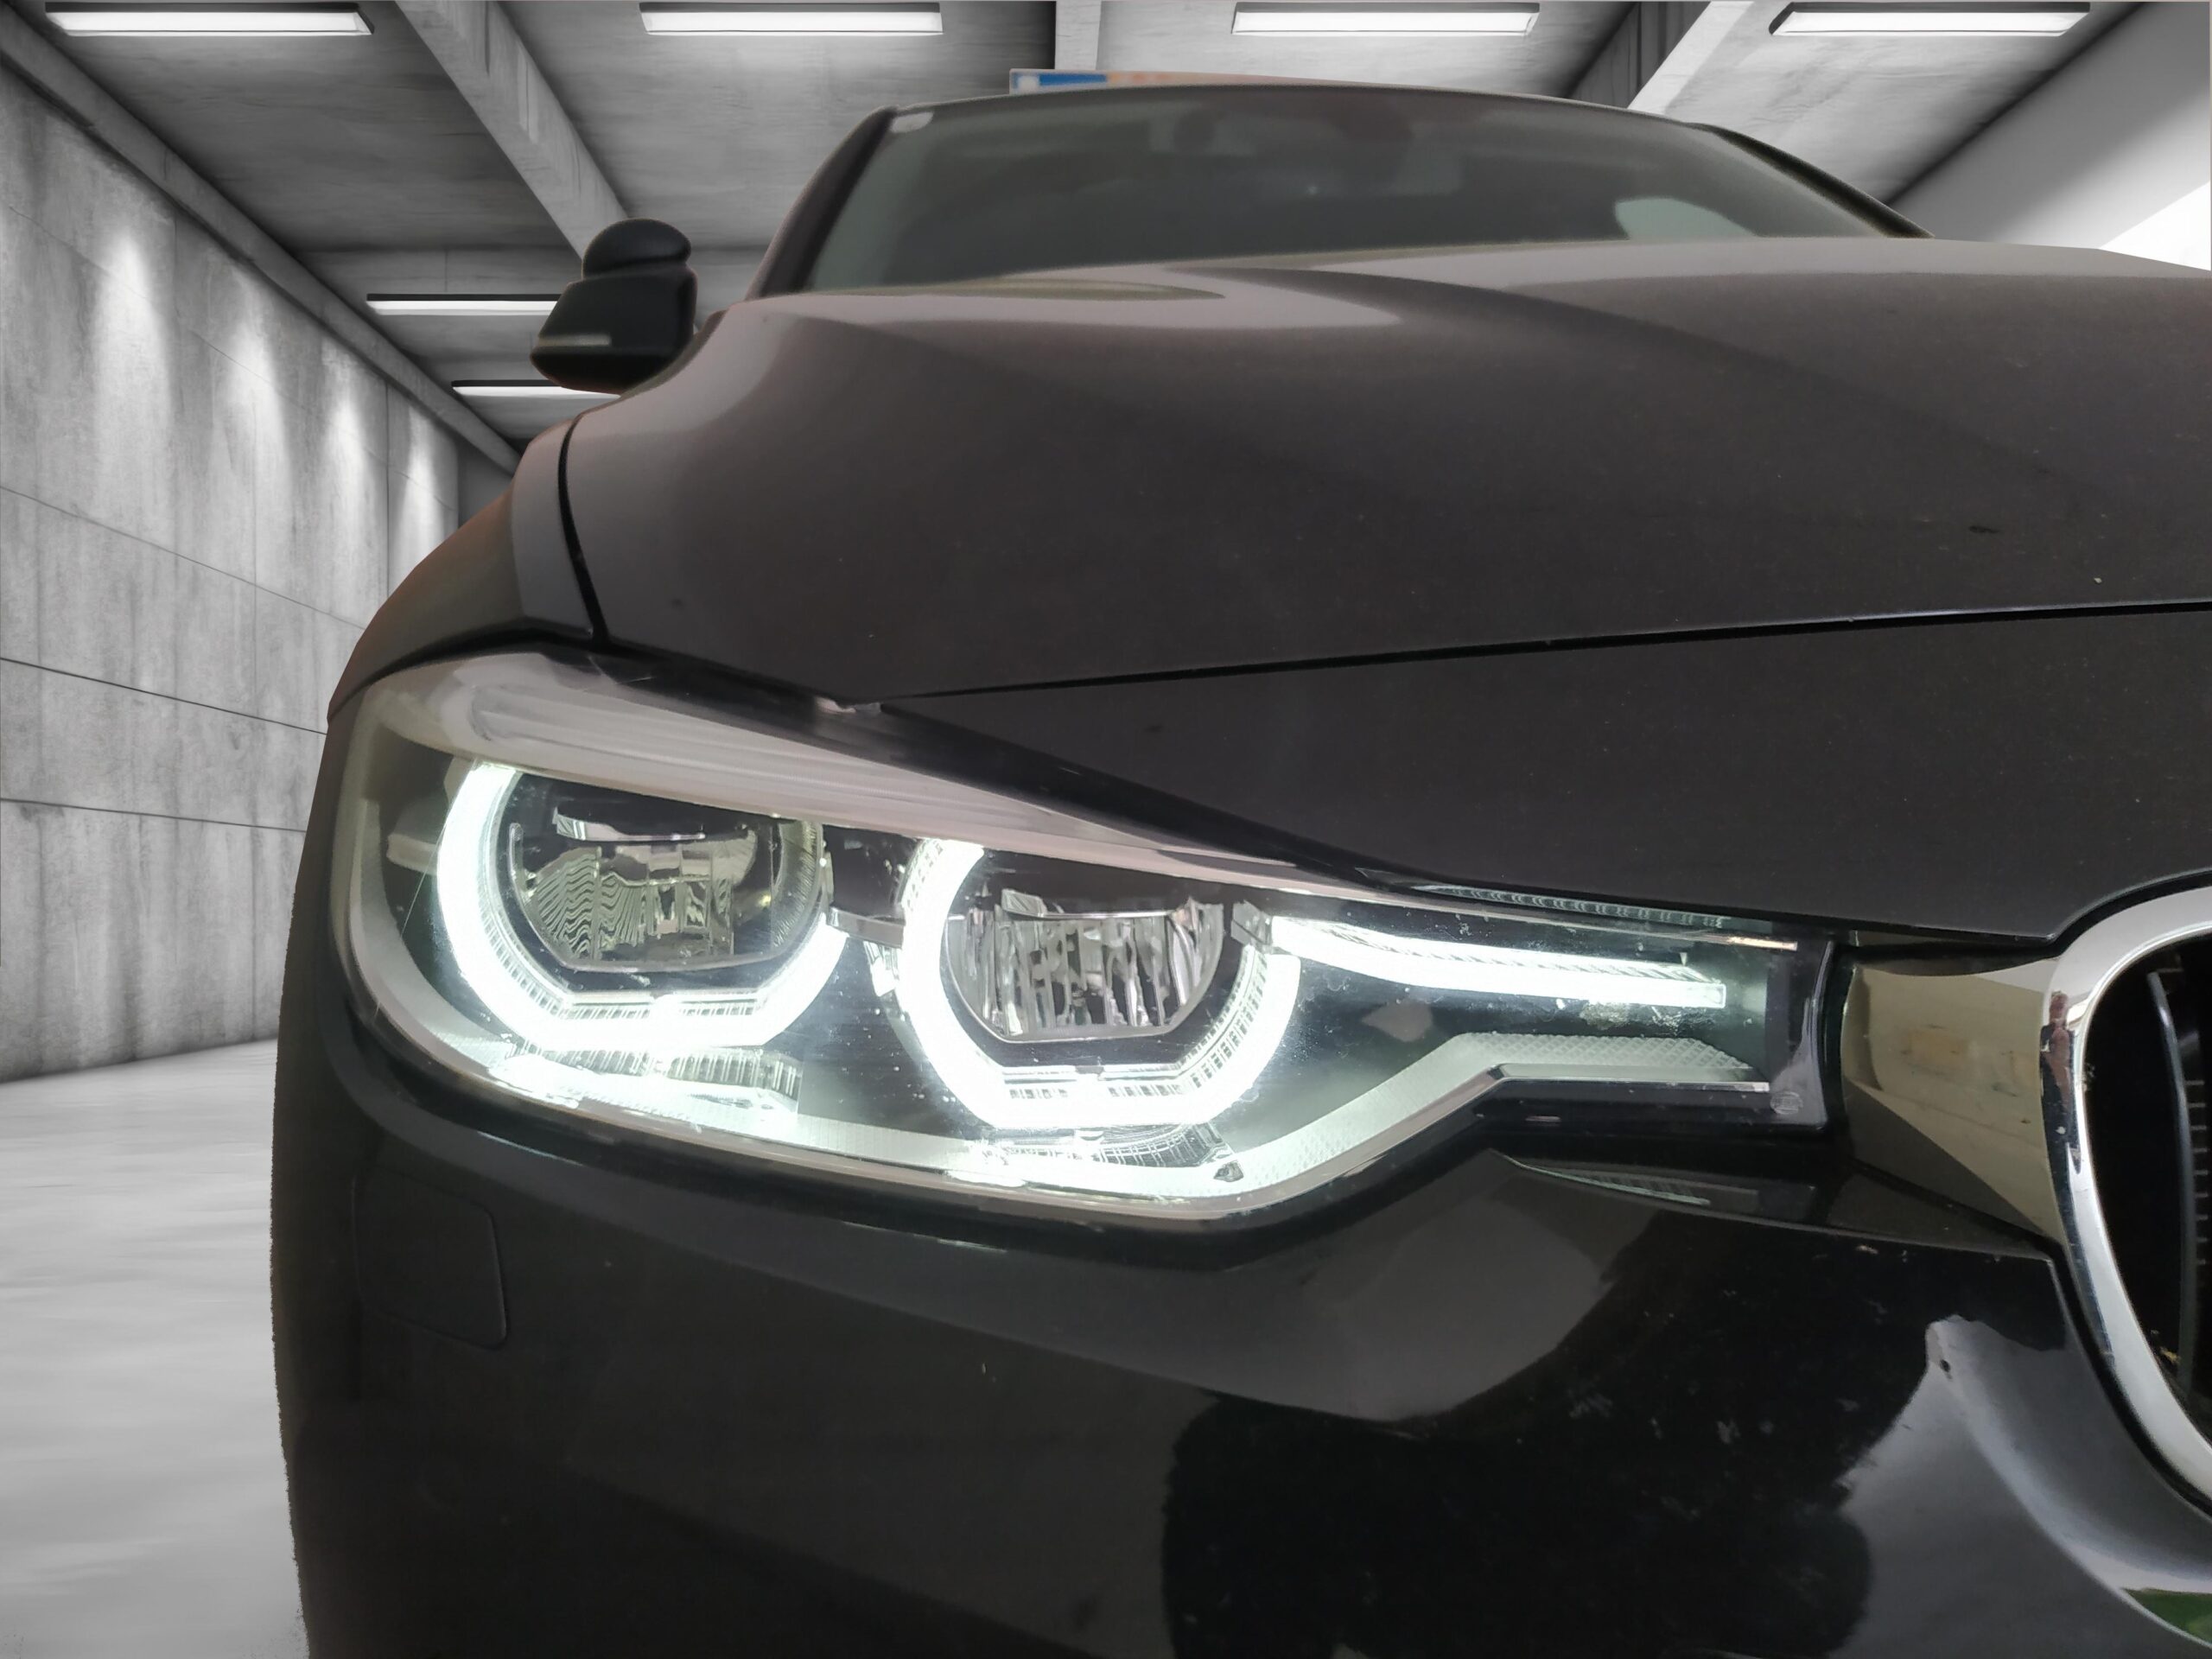 BMW Scheinwerfer in der Garage